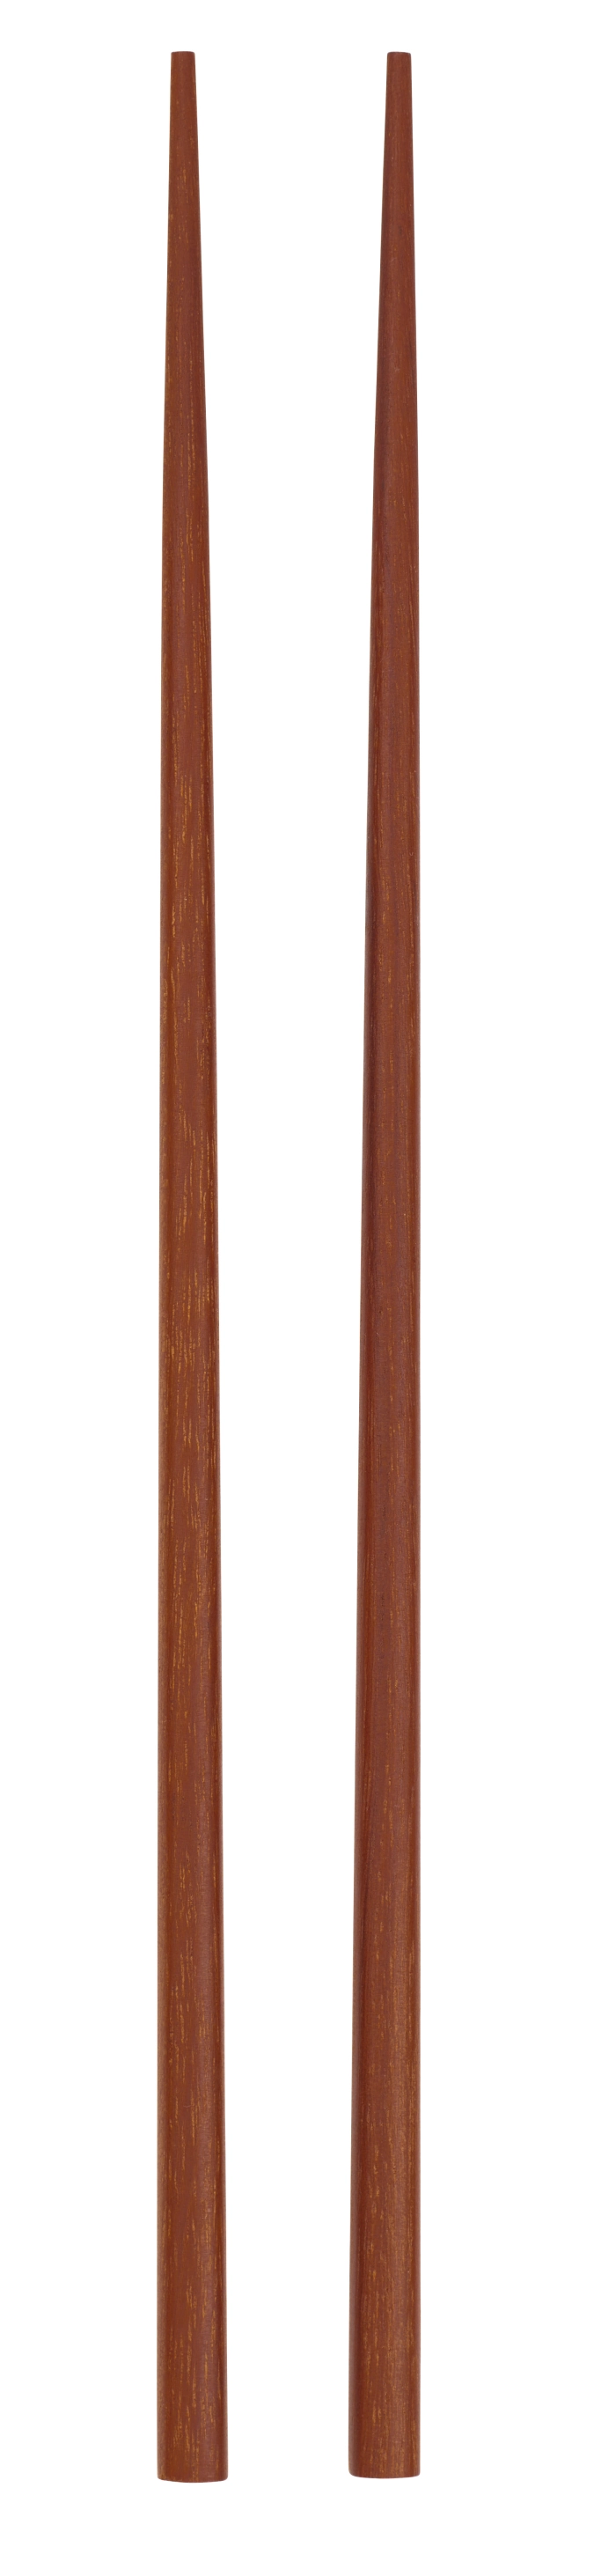 4er Set Wood Stäbchen 25cm